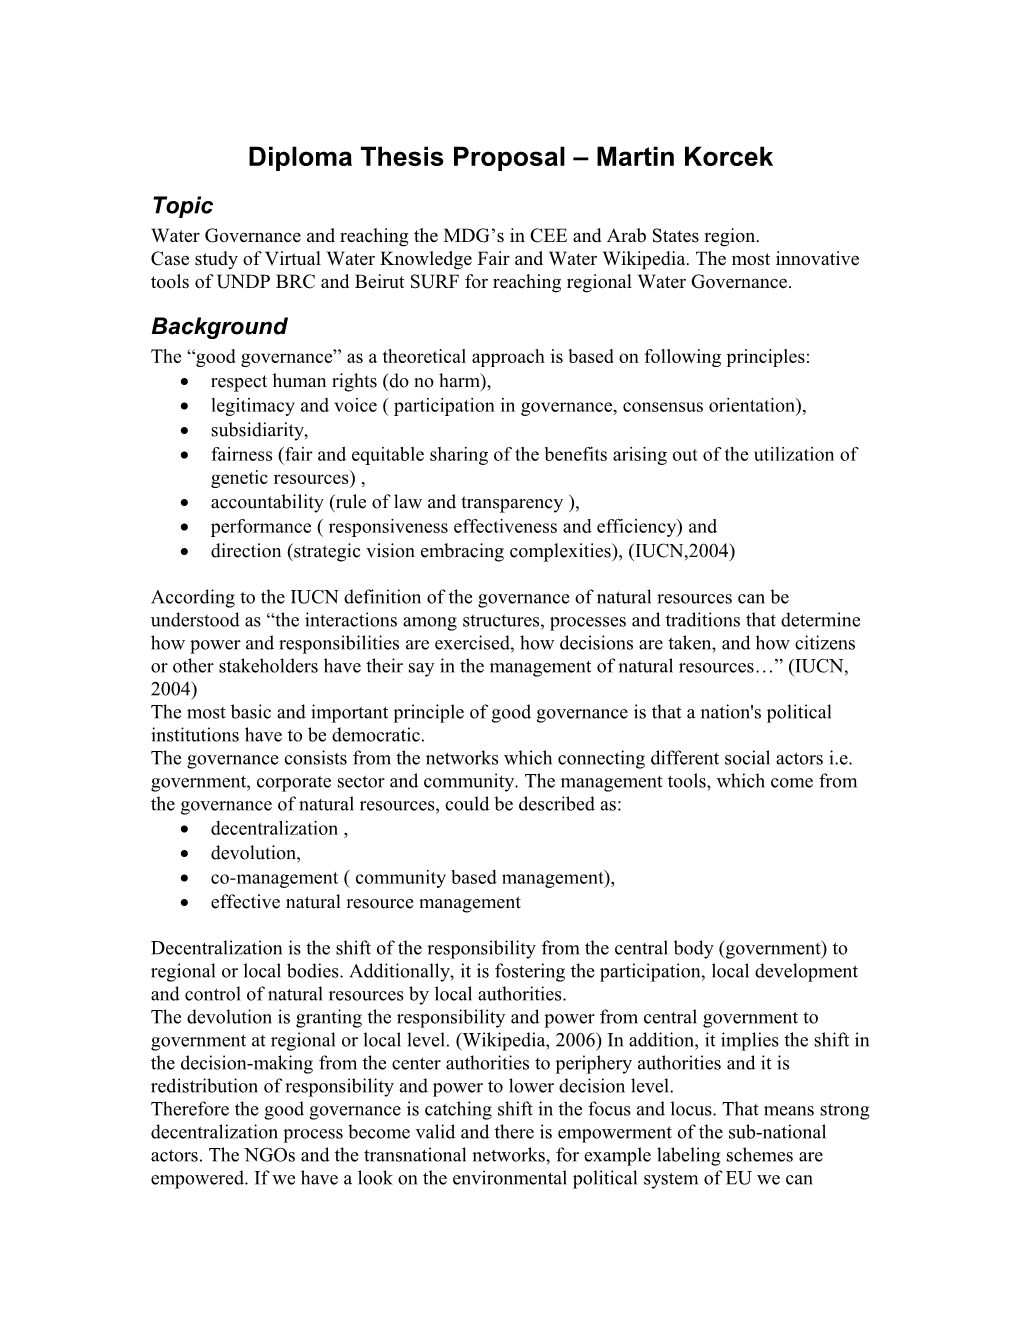 Diploma Thesis Proposal Martin Korcek